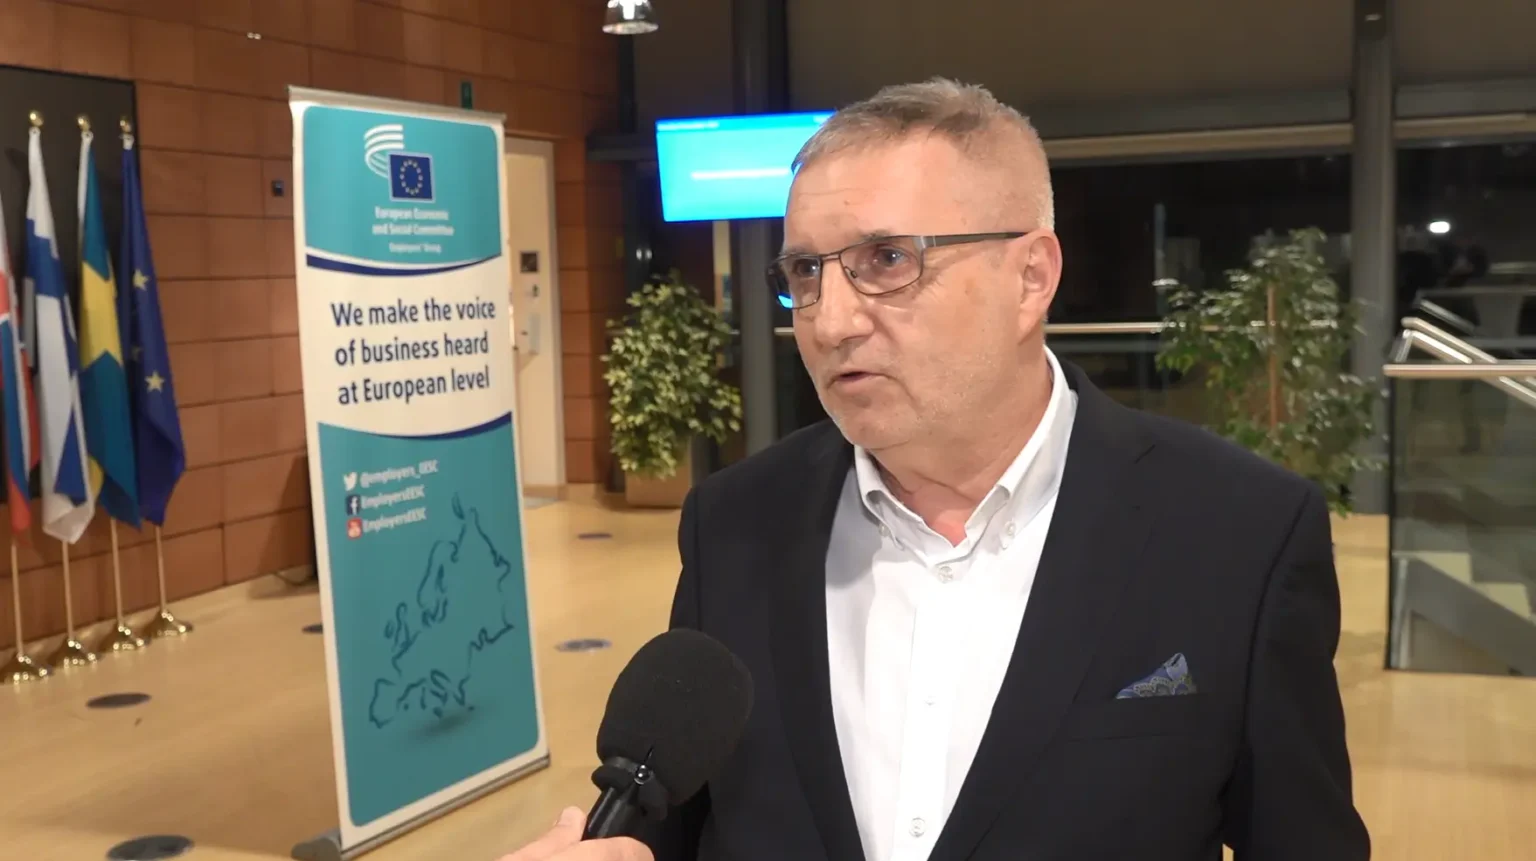 Krzysztof Balon, Wiceprzewodniczący Grupy III z Europejskiego Komitetu Ekonomiczno-Społecznego opowiada w Brukseli o tym, jak Polska wypada na unijnym tle pod kątem ESG.